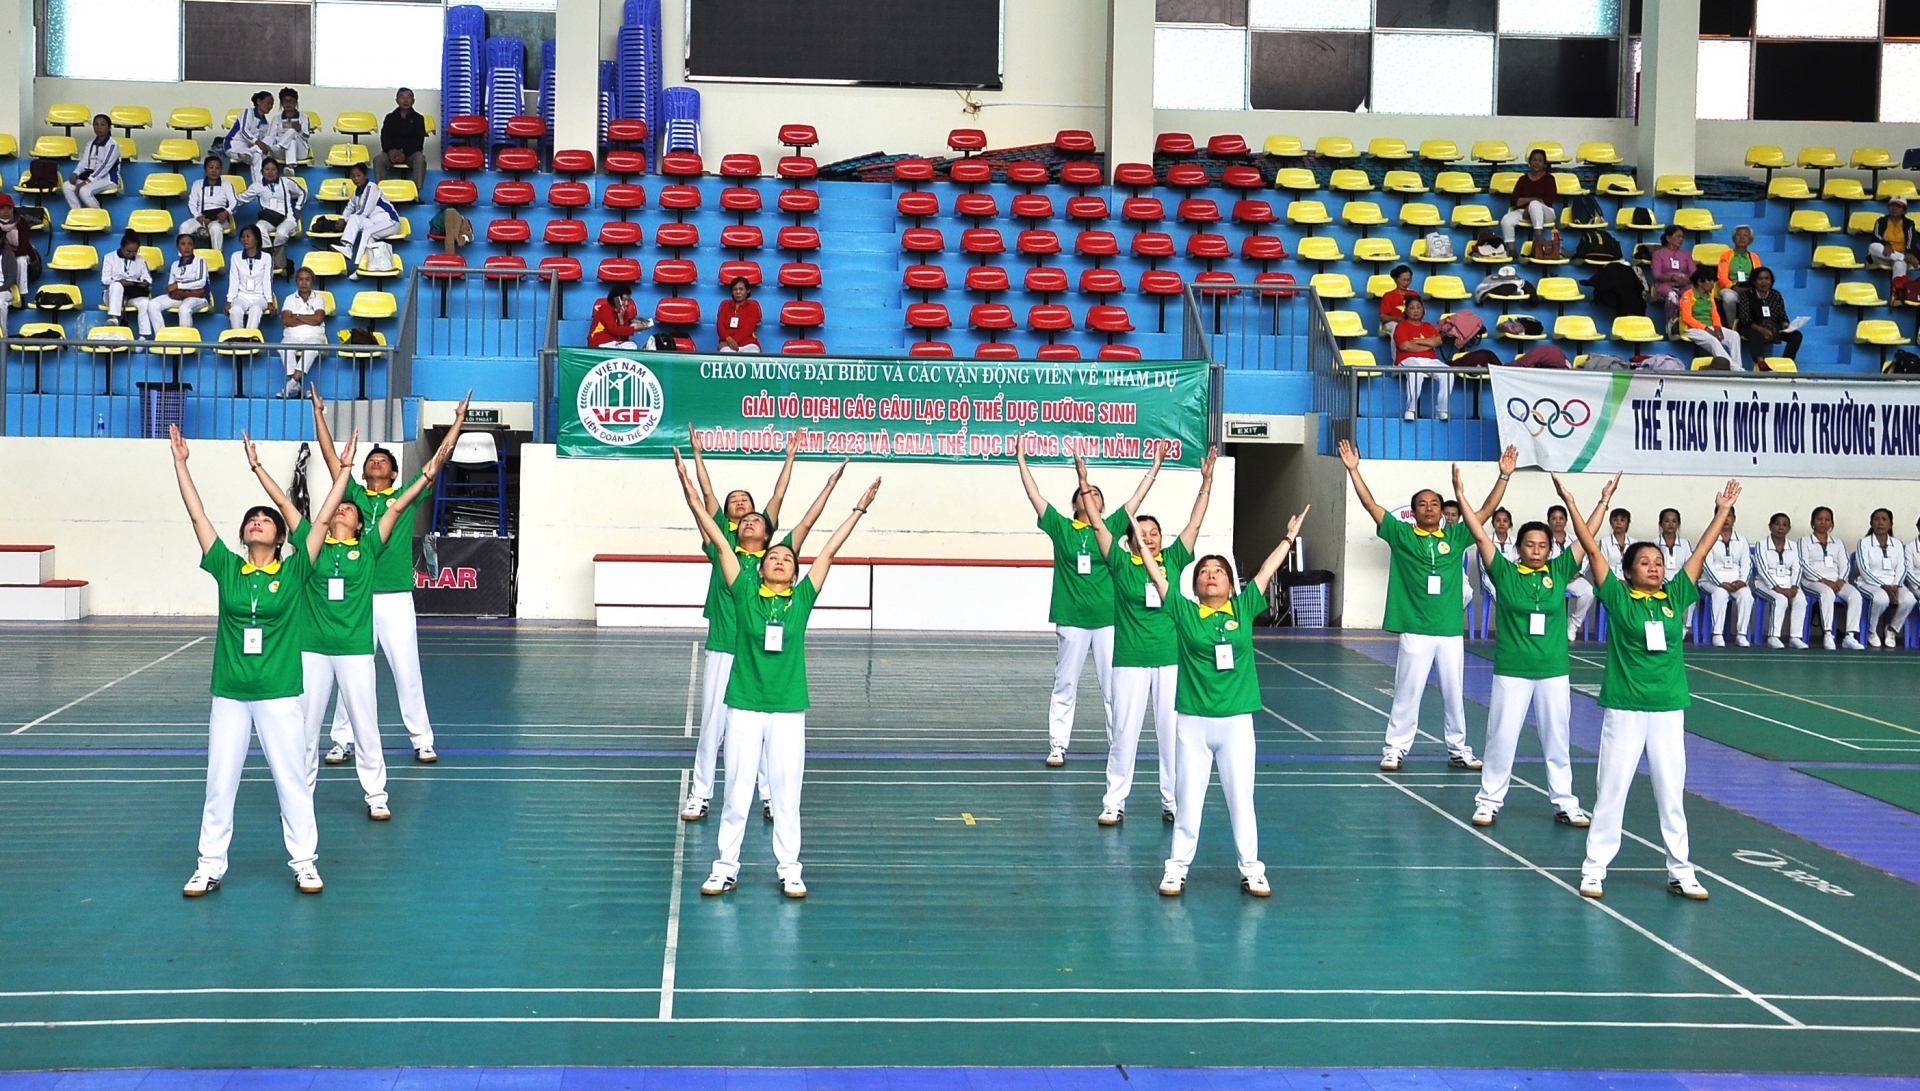 Lâm Đồng giành huy chương vàng tại giải Vô địch các câu lạc bộ thể dục dưỡng sinh toàn quốc